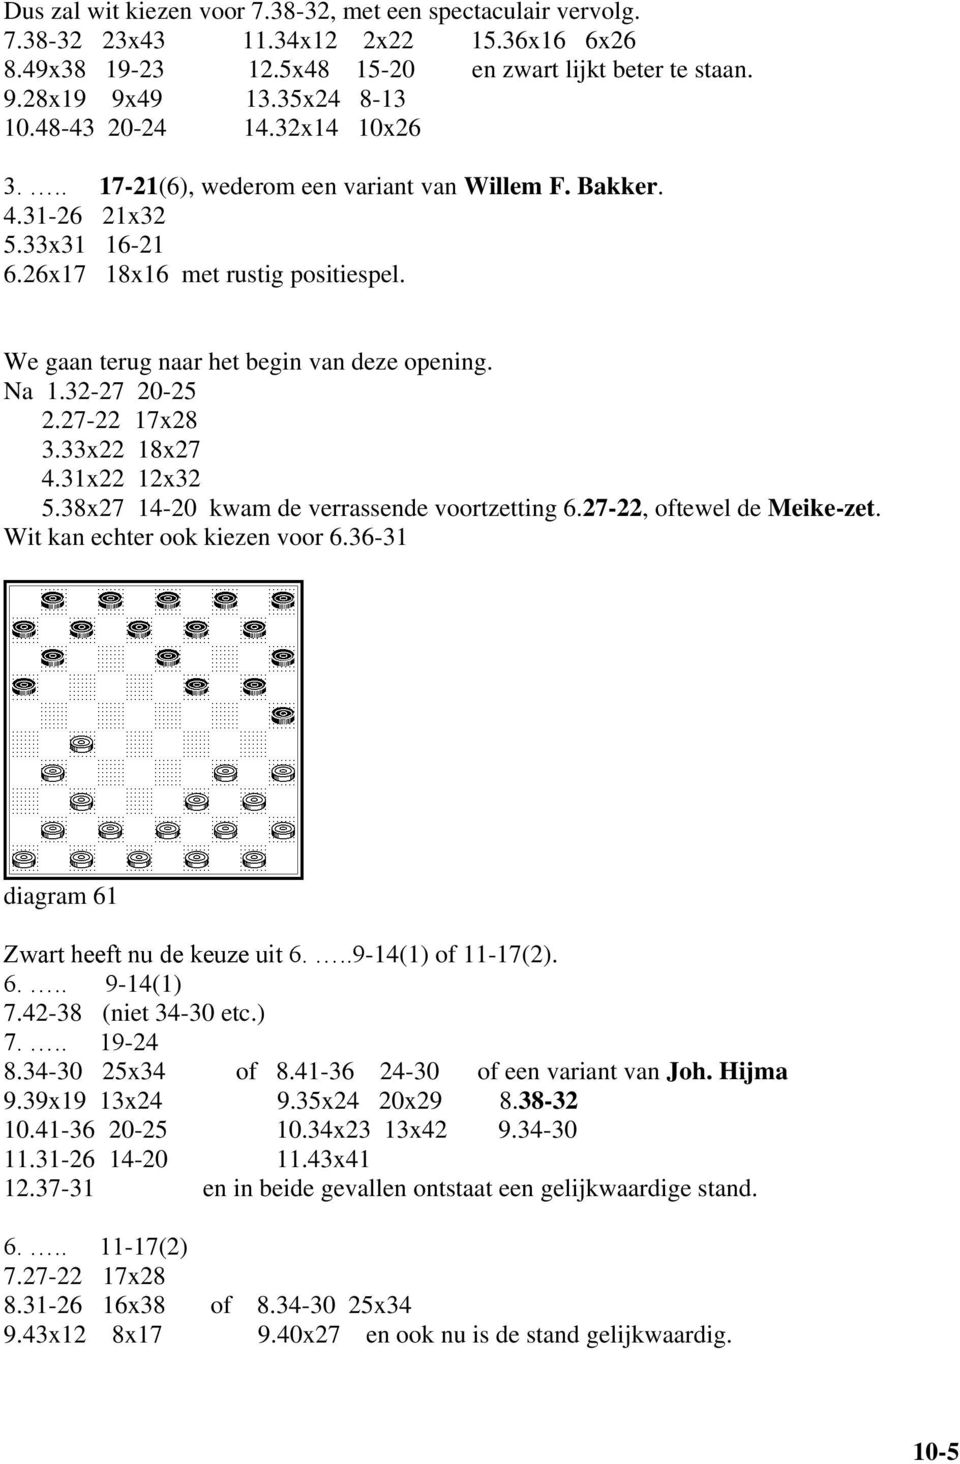 Na 1.32-27 20-25 2.27-22 17x28 3.33x22 18x27 4.31x22 12x32 5.38x27 14-20 kwam de verrassende voortzetting 6.27-22, oftewel de Meike-zet. Wit kan echter ook kiezen voor 6.